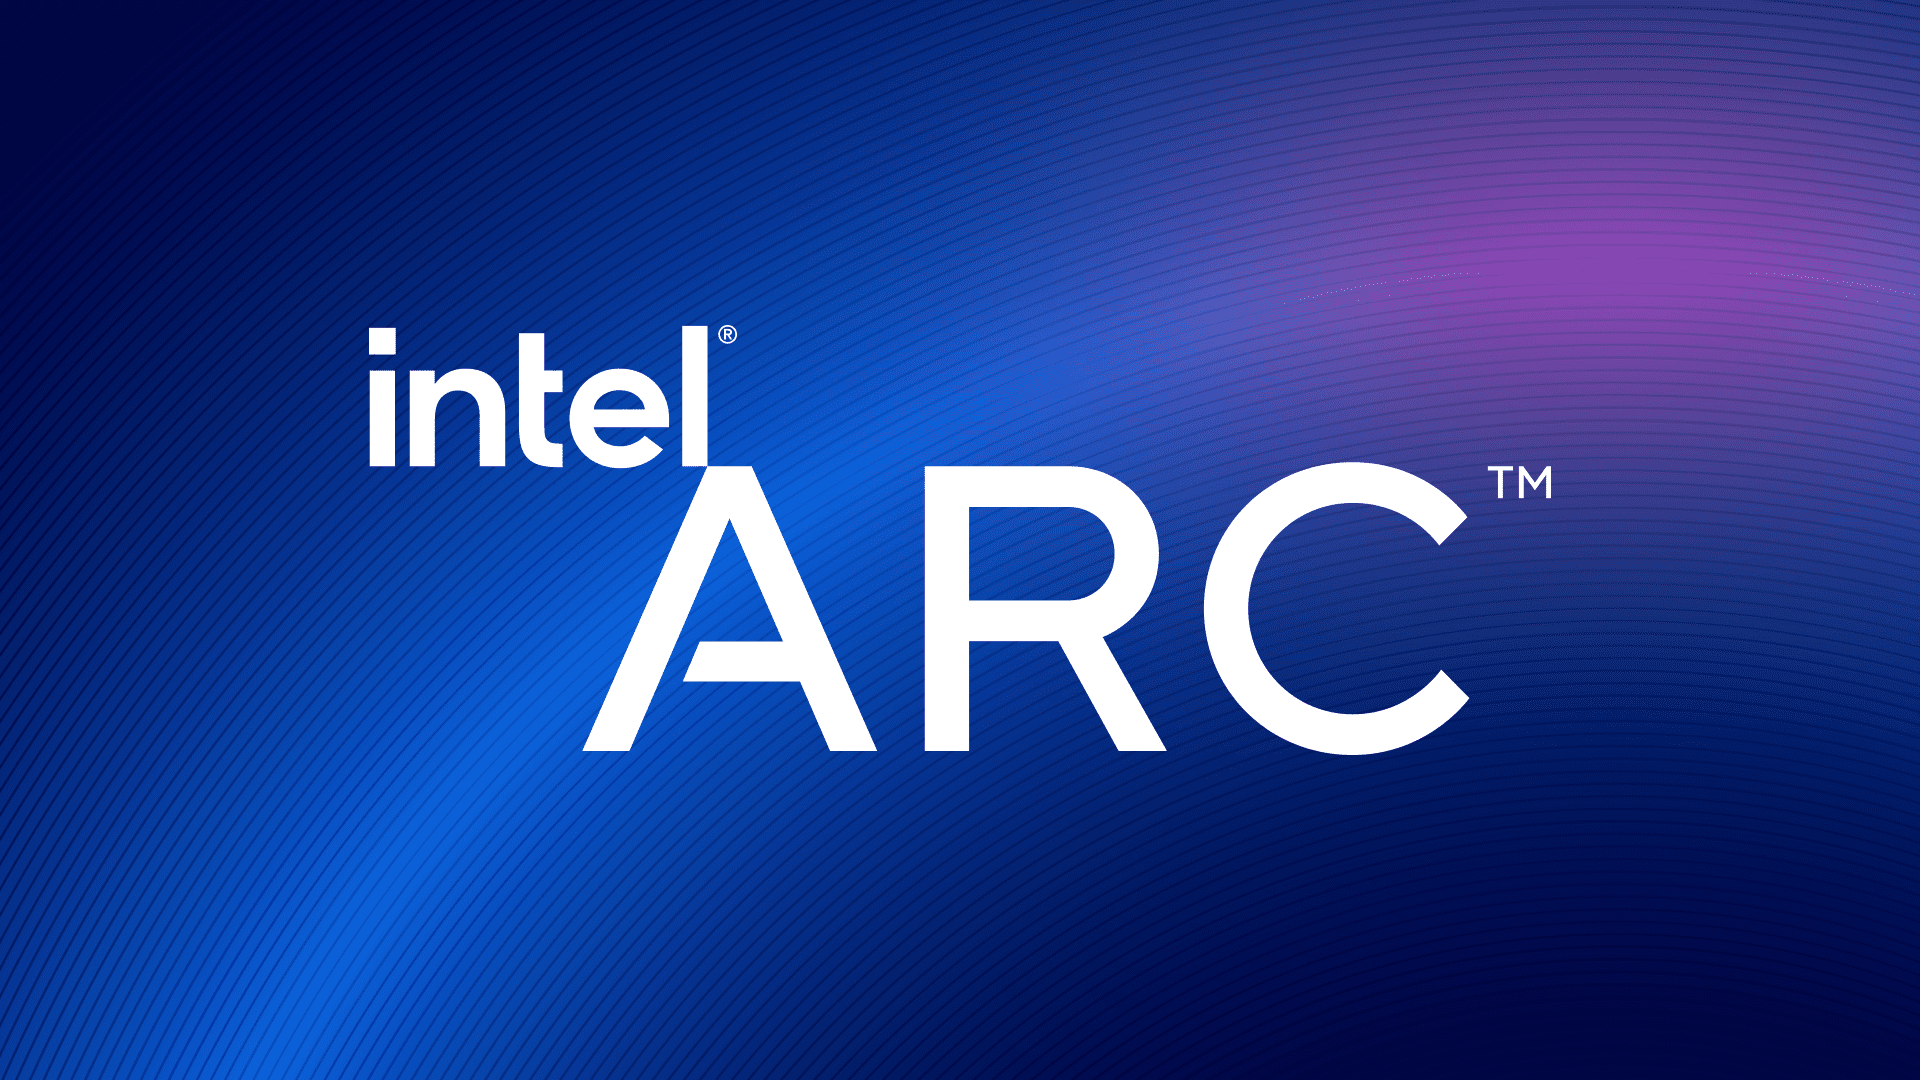 هل هي الأمل المُنتظر، أم سراب آخر؟...كل ما تود معرفته عن Intel ARC